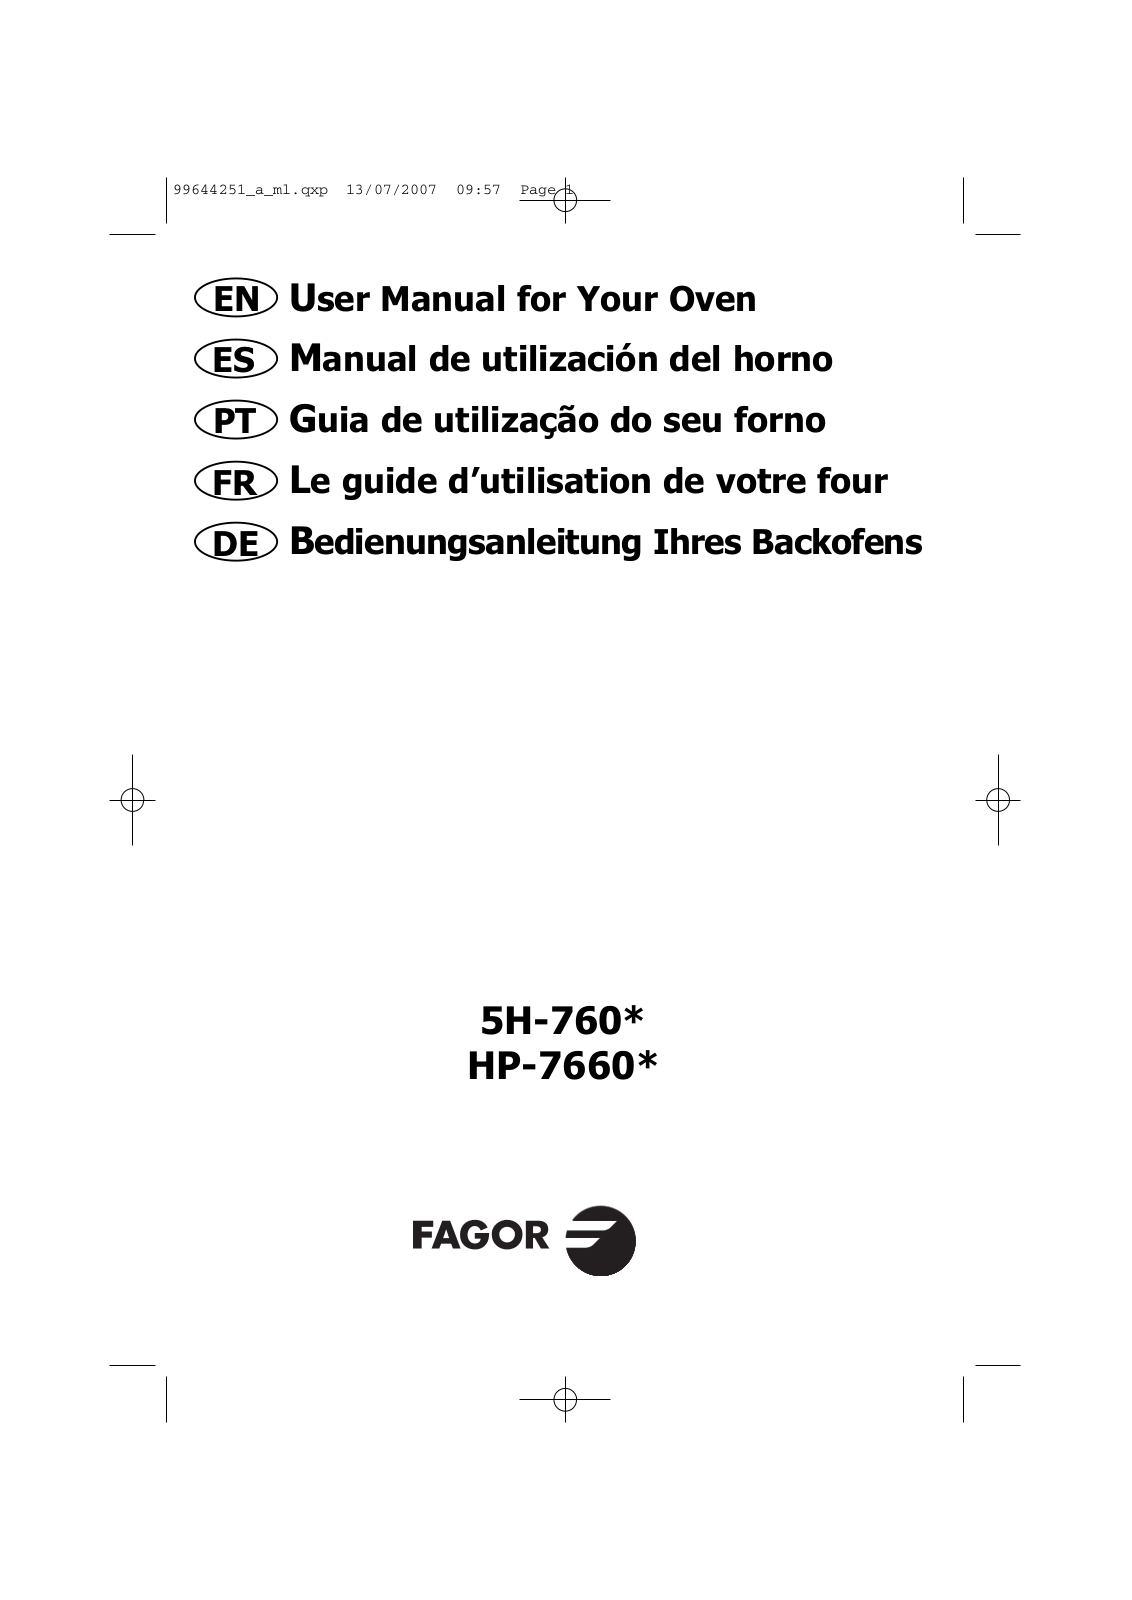 FAGOR 5H-760 User Manual